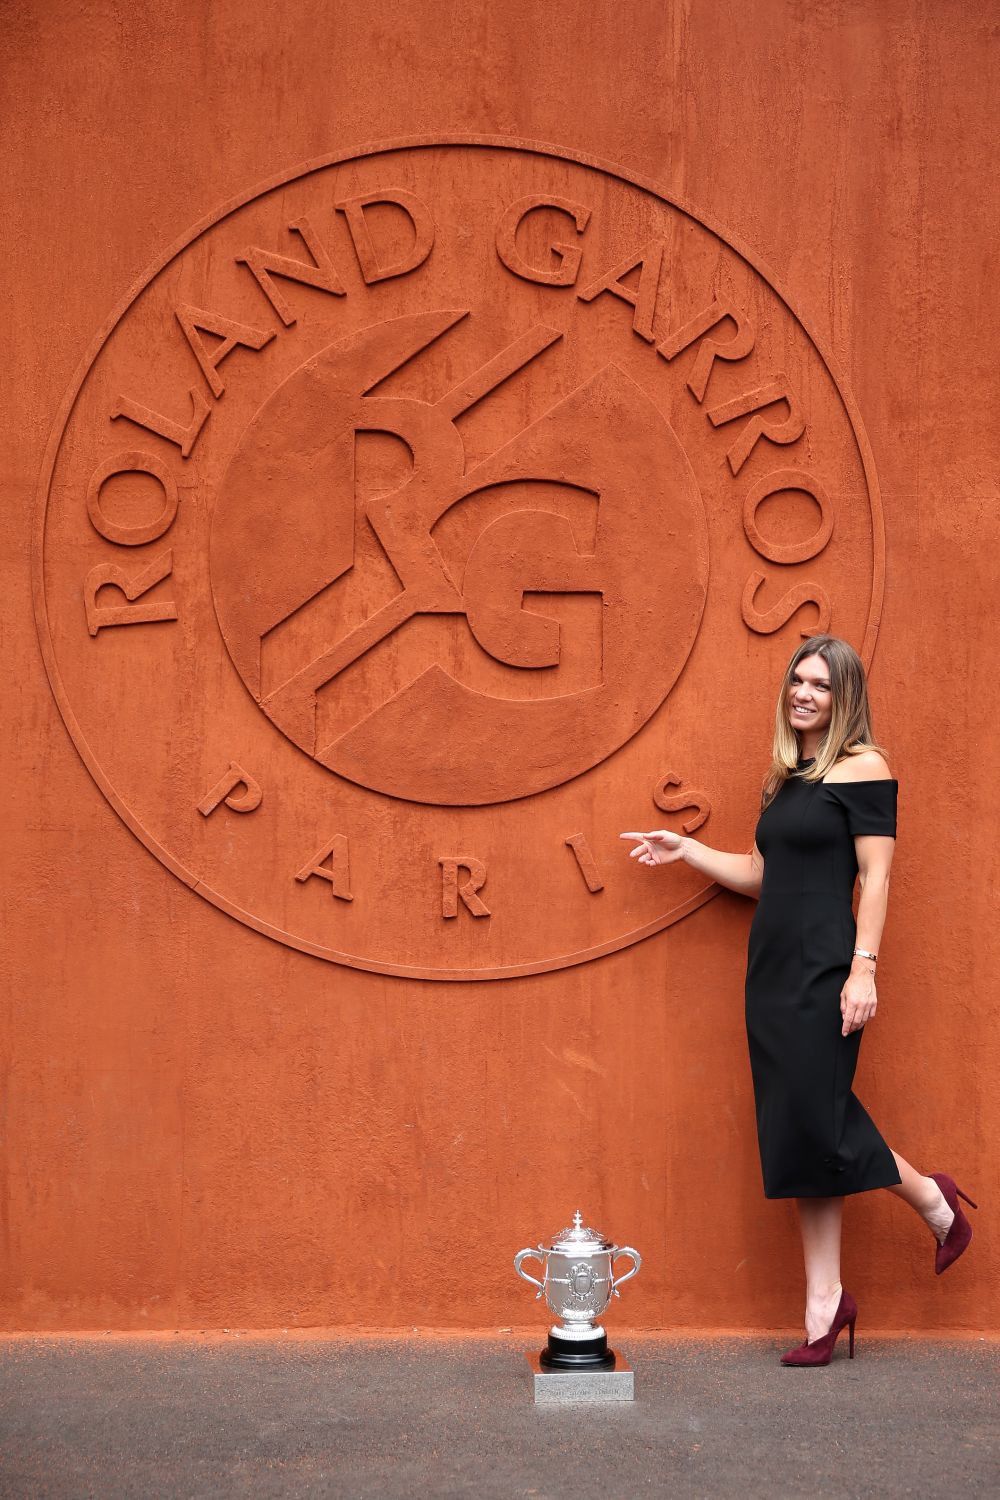 A avut loc sedinta foto a Simonei Halep cu trofeul Roland Garros! Cum s-a imbracat Simona la eveniment FOTO_15